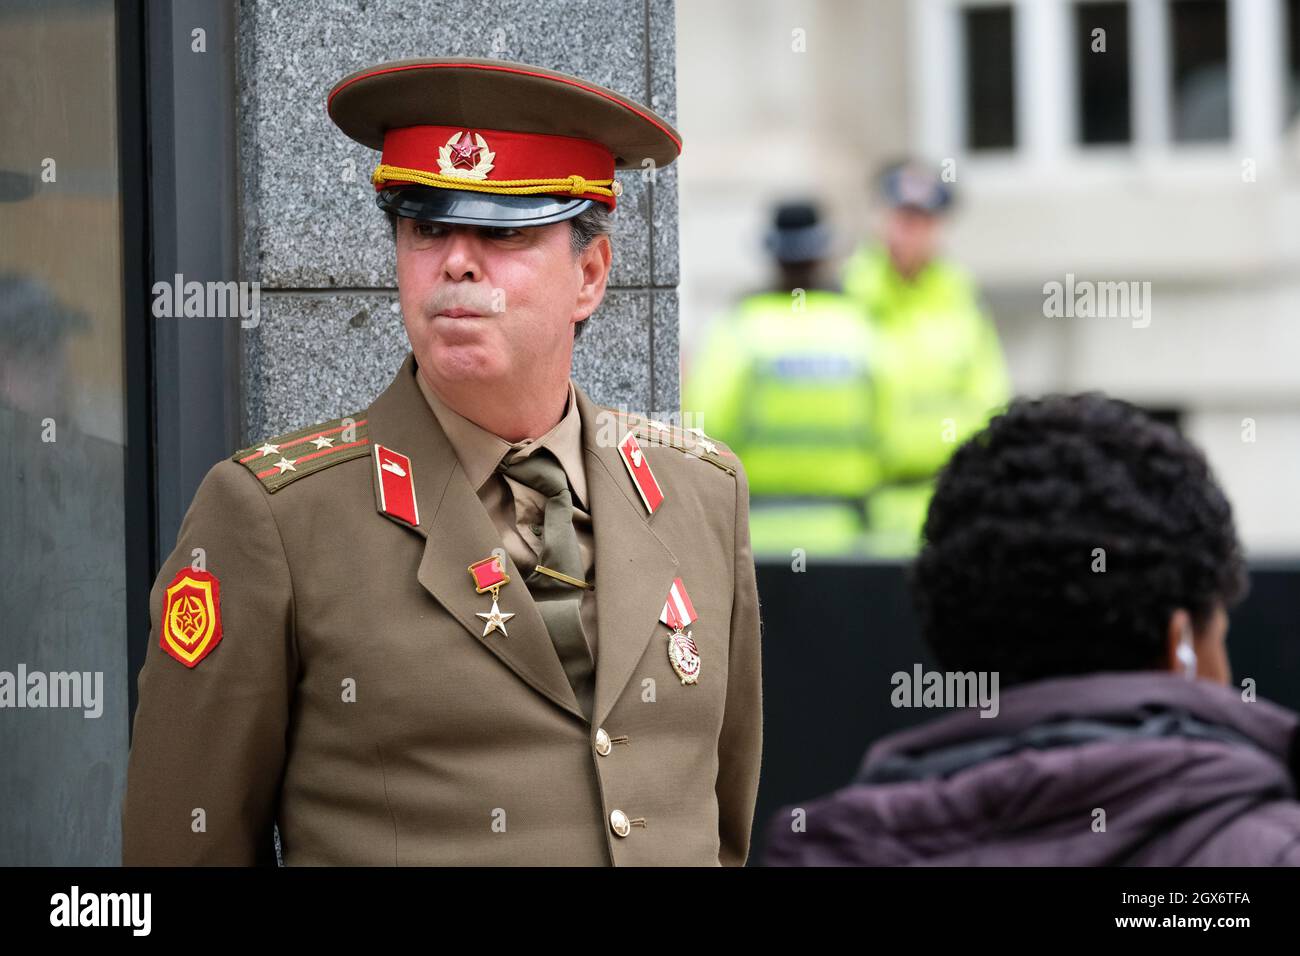 Manchester, Royaume-Uni – lundi 4 octobre 2021 – Steve Bray, activiste anti-Brexit, vêtu d'un uniforme militaire russe en dehors de la Conférence du Parti conservateur à Manchester - photo Steven May / Alamy Live News Banque D'Images